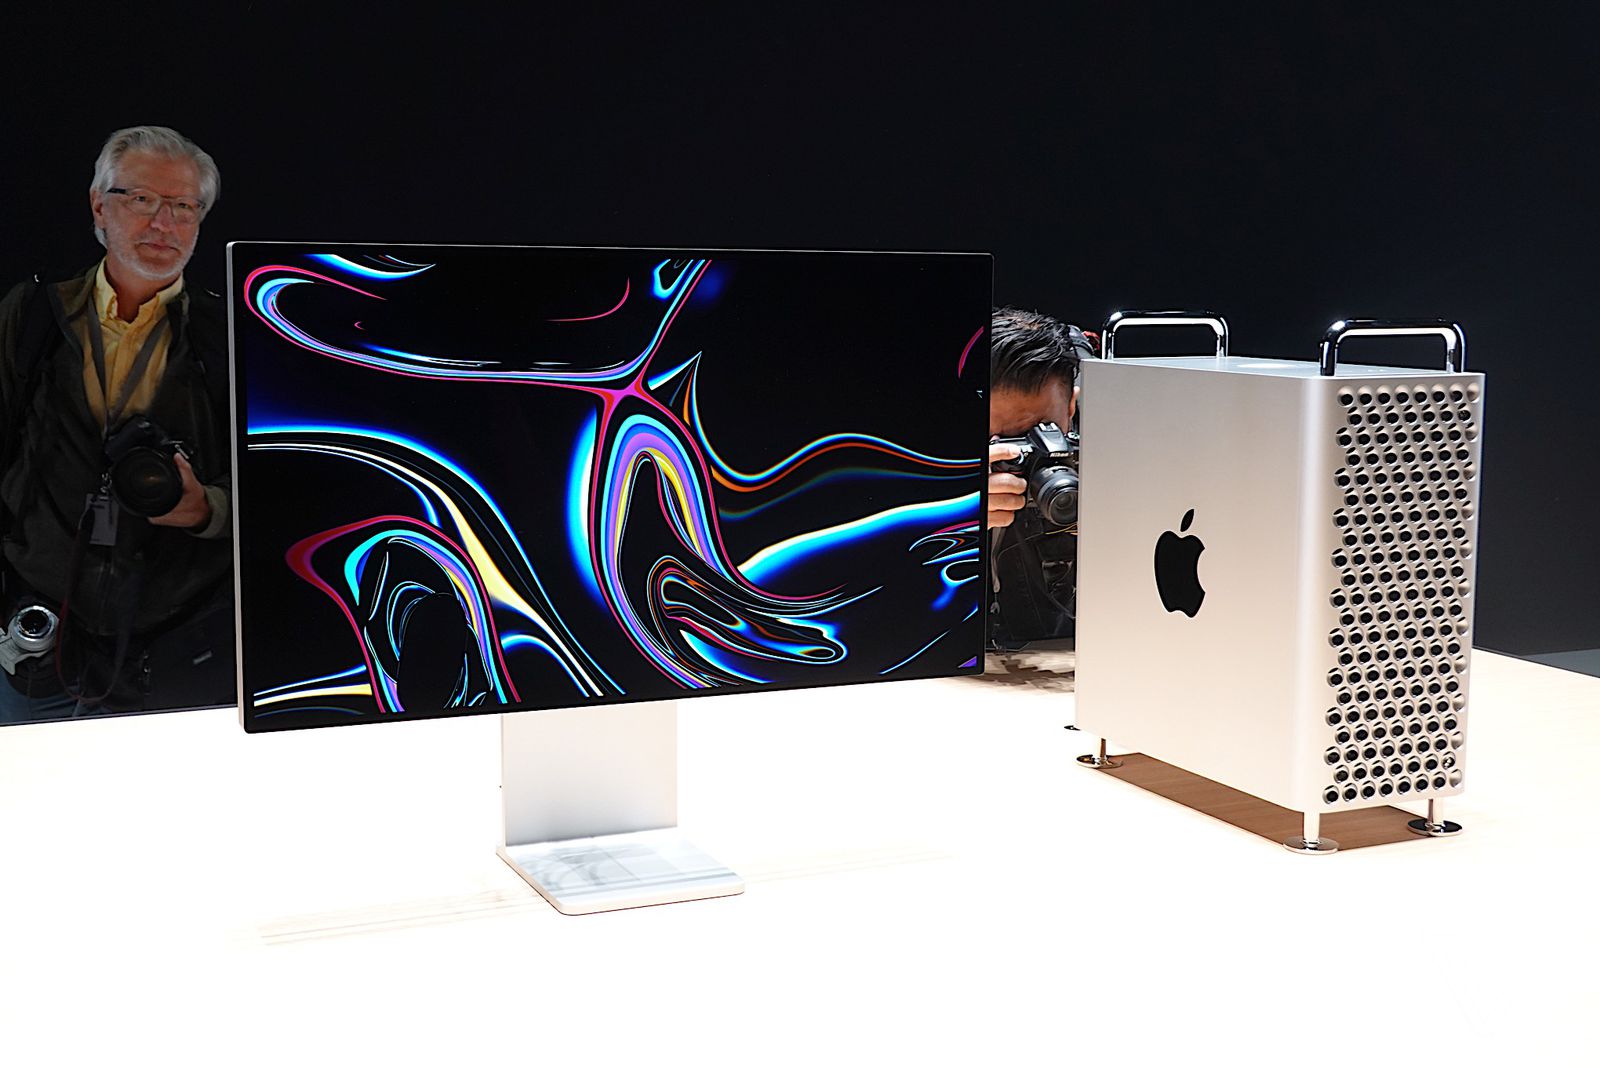 Tuỳ chọn Mac Pro 2019 tối đa sẽ tốn gần 1 tỷ và chưa có màn hình hay card đồ hoạ